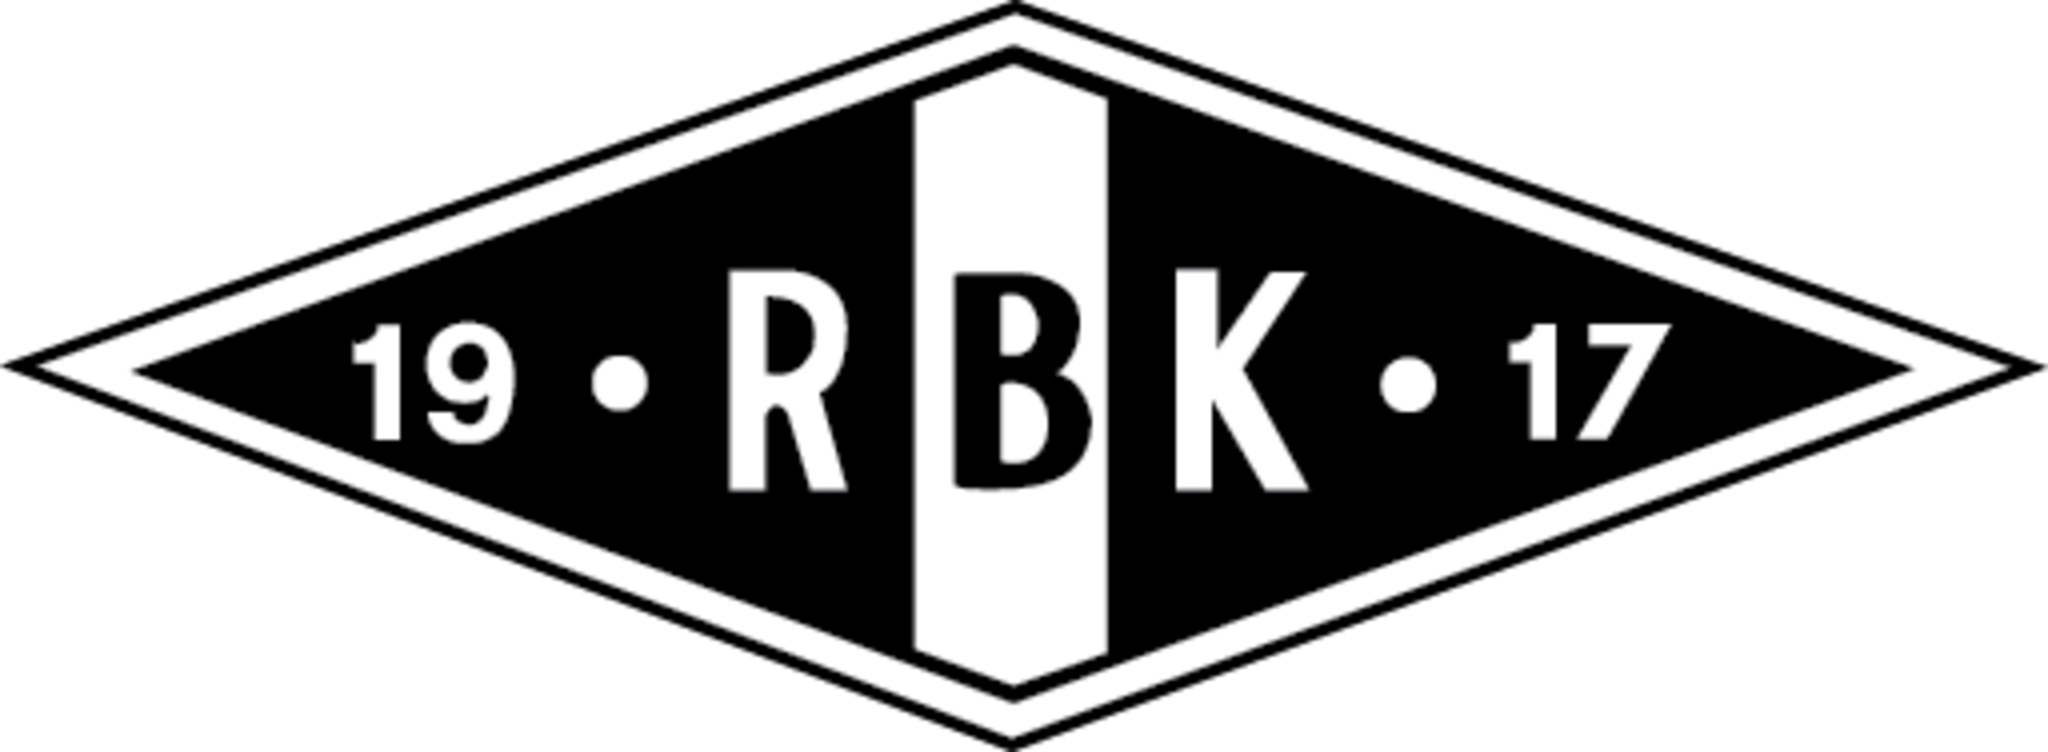 Rosenborg fotballklubb logo